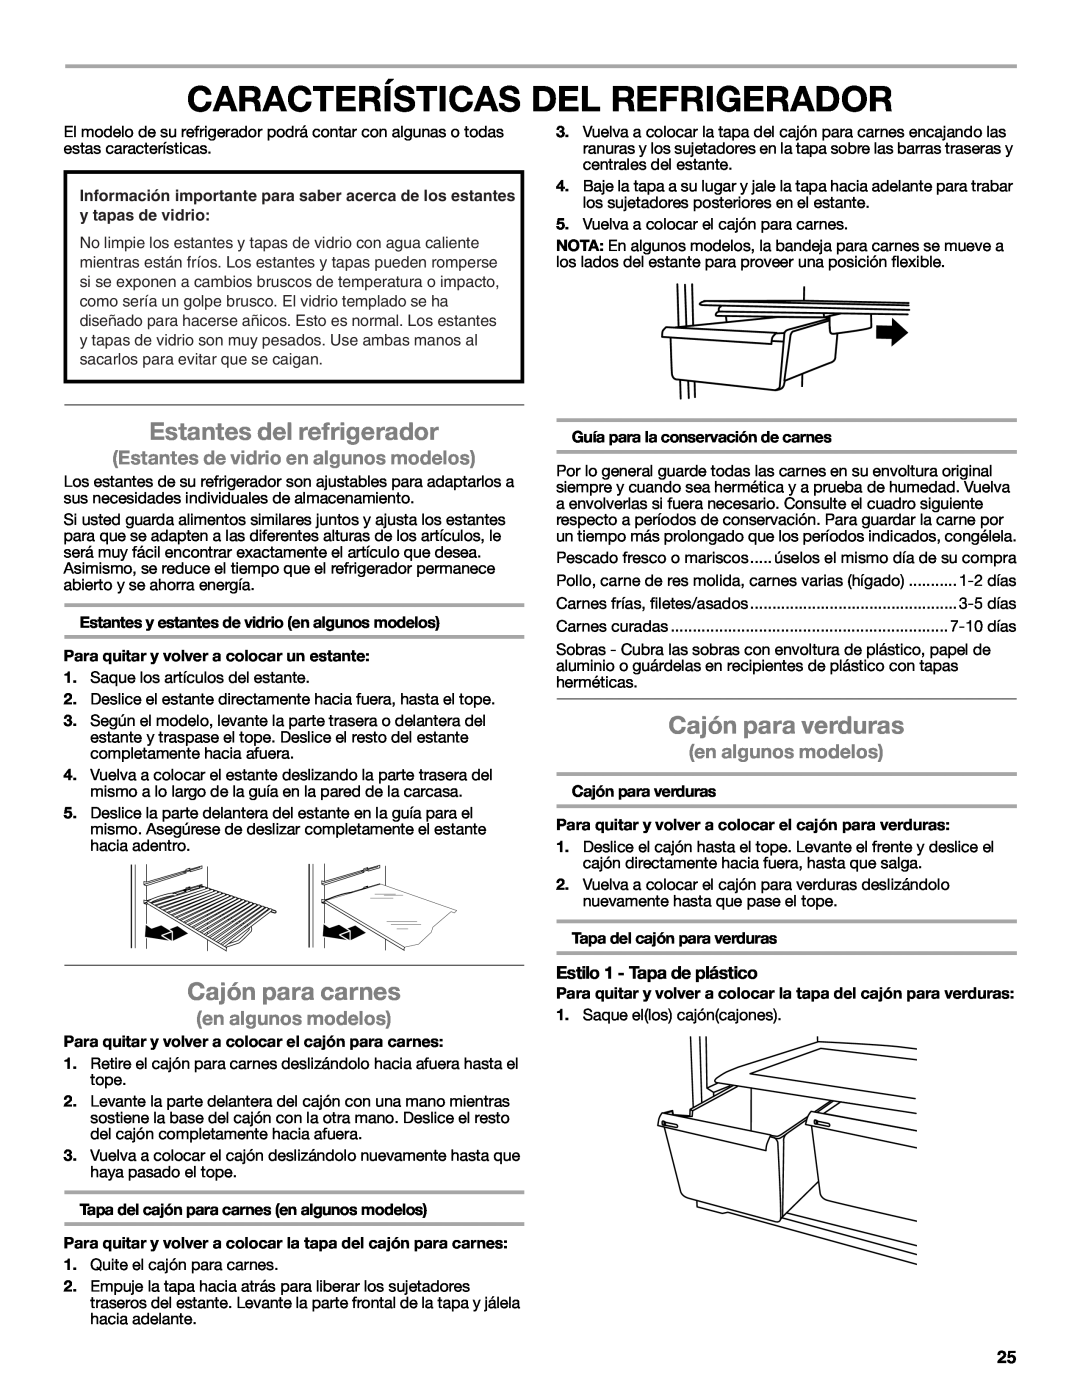 Whirlpool WRT111SFAF Características Del Refrigerador, Estantes del refrigerador, Cajón para carnes, Cajón para verduras 